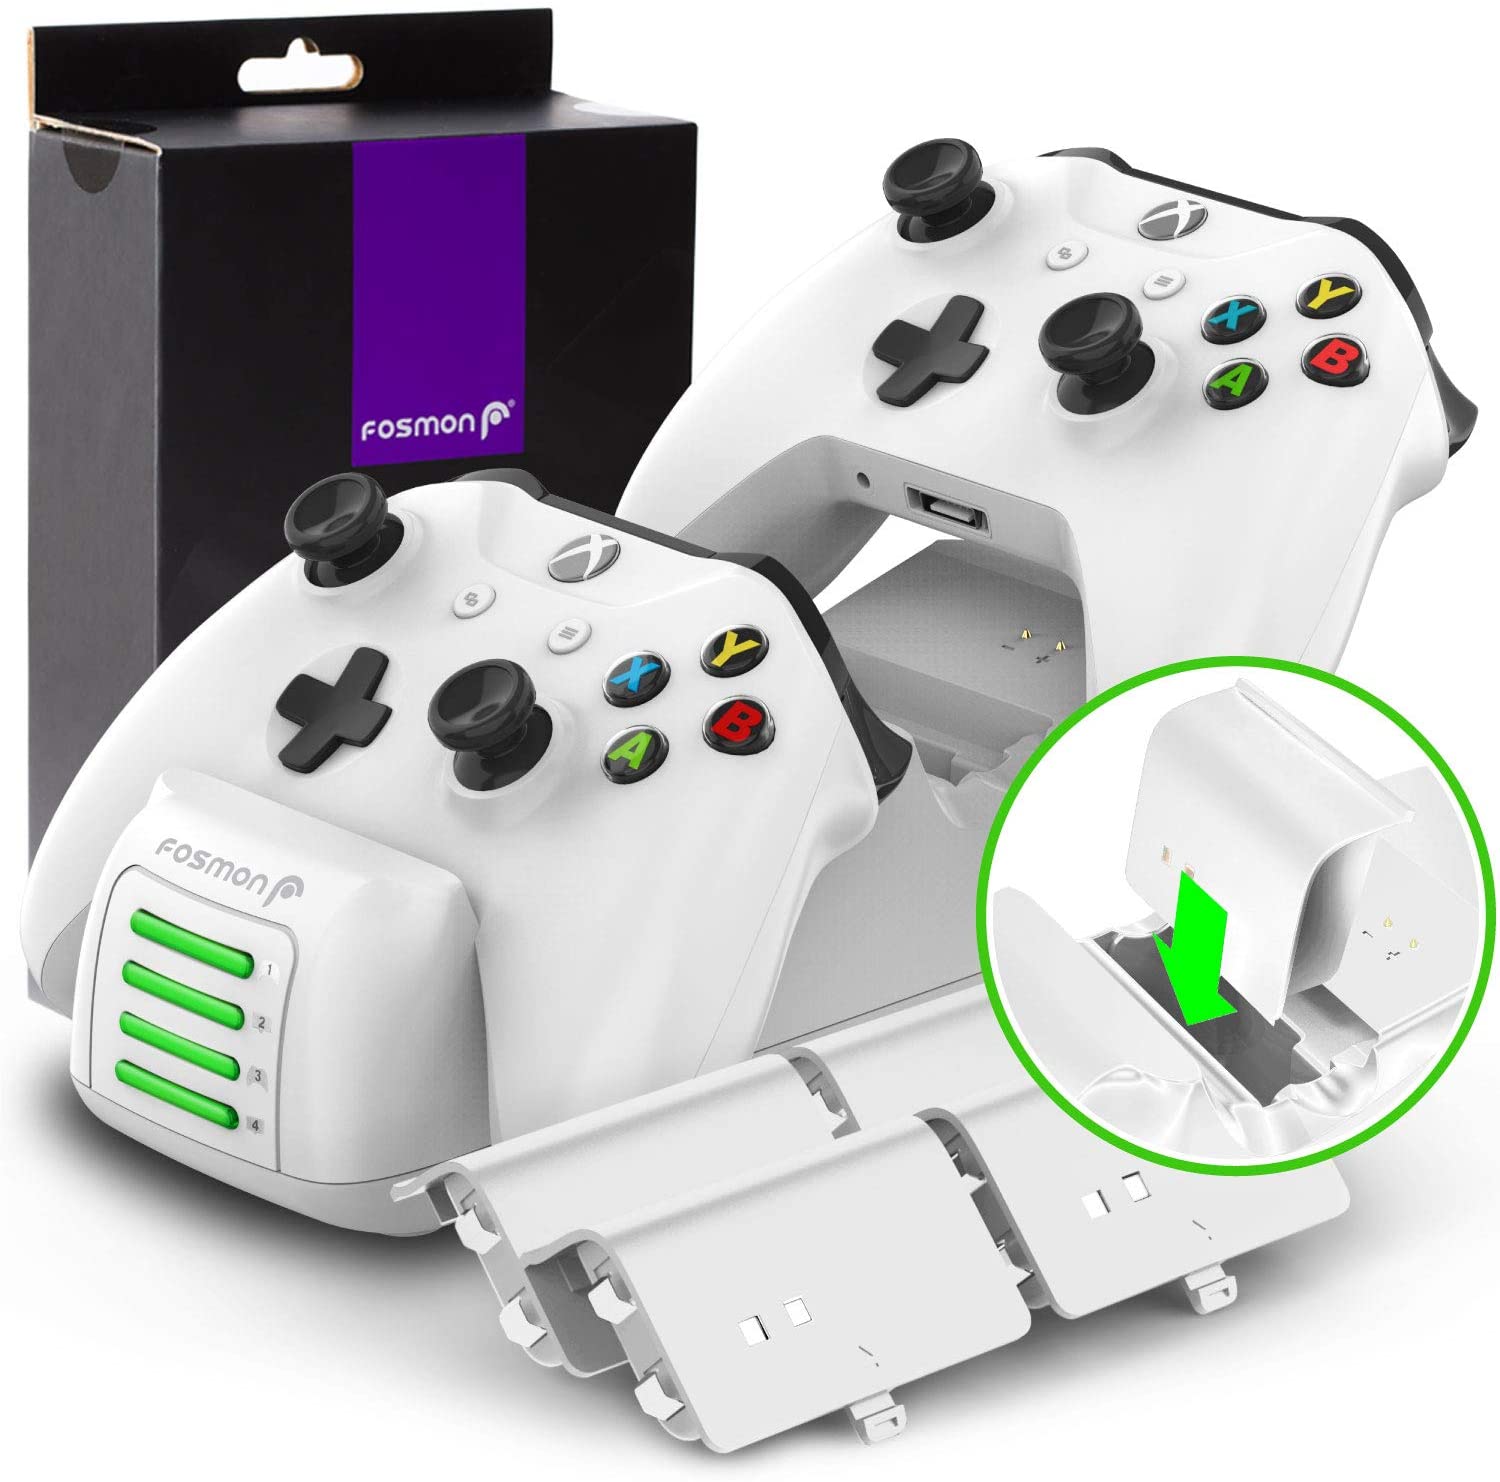 Cargador para mando de Xbox One Quad PRO con 4 baterías